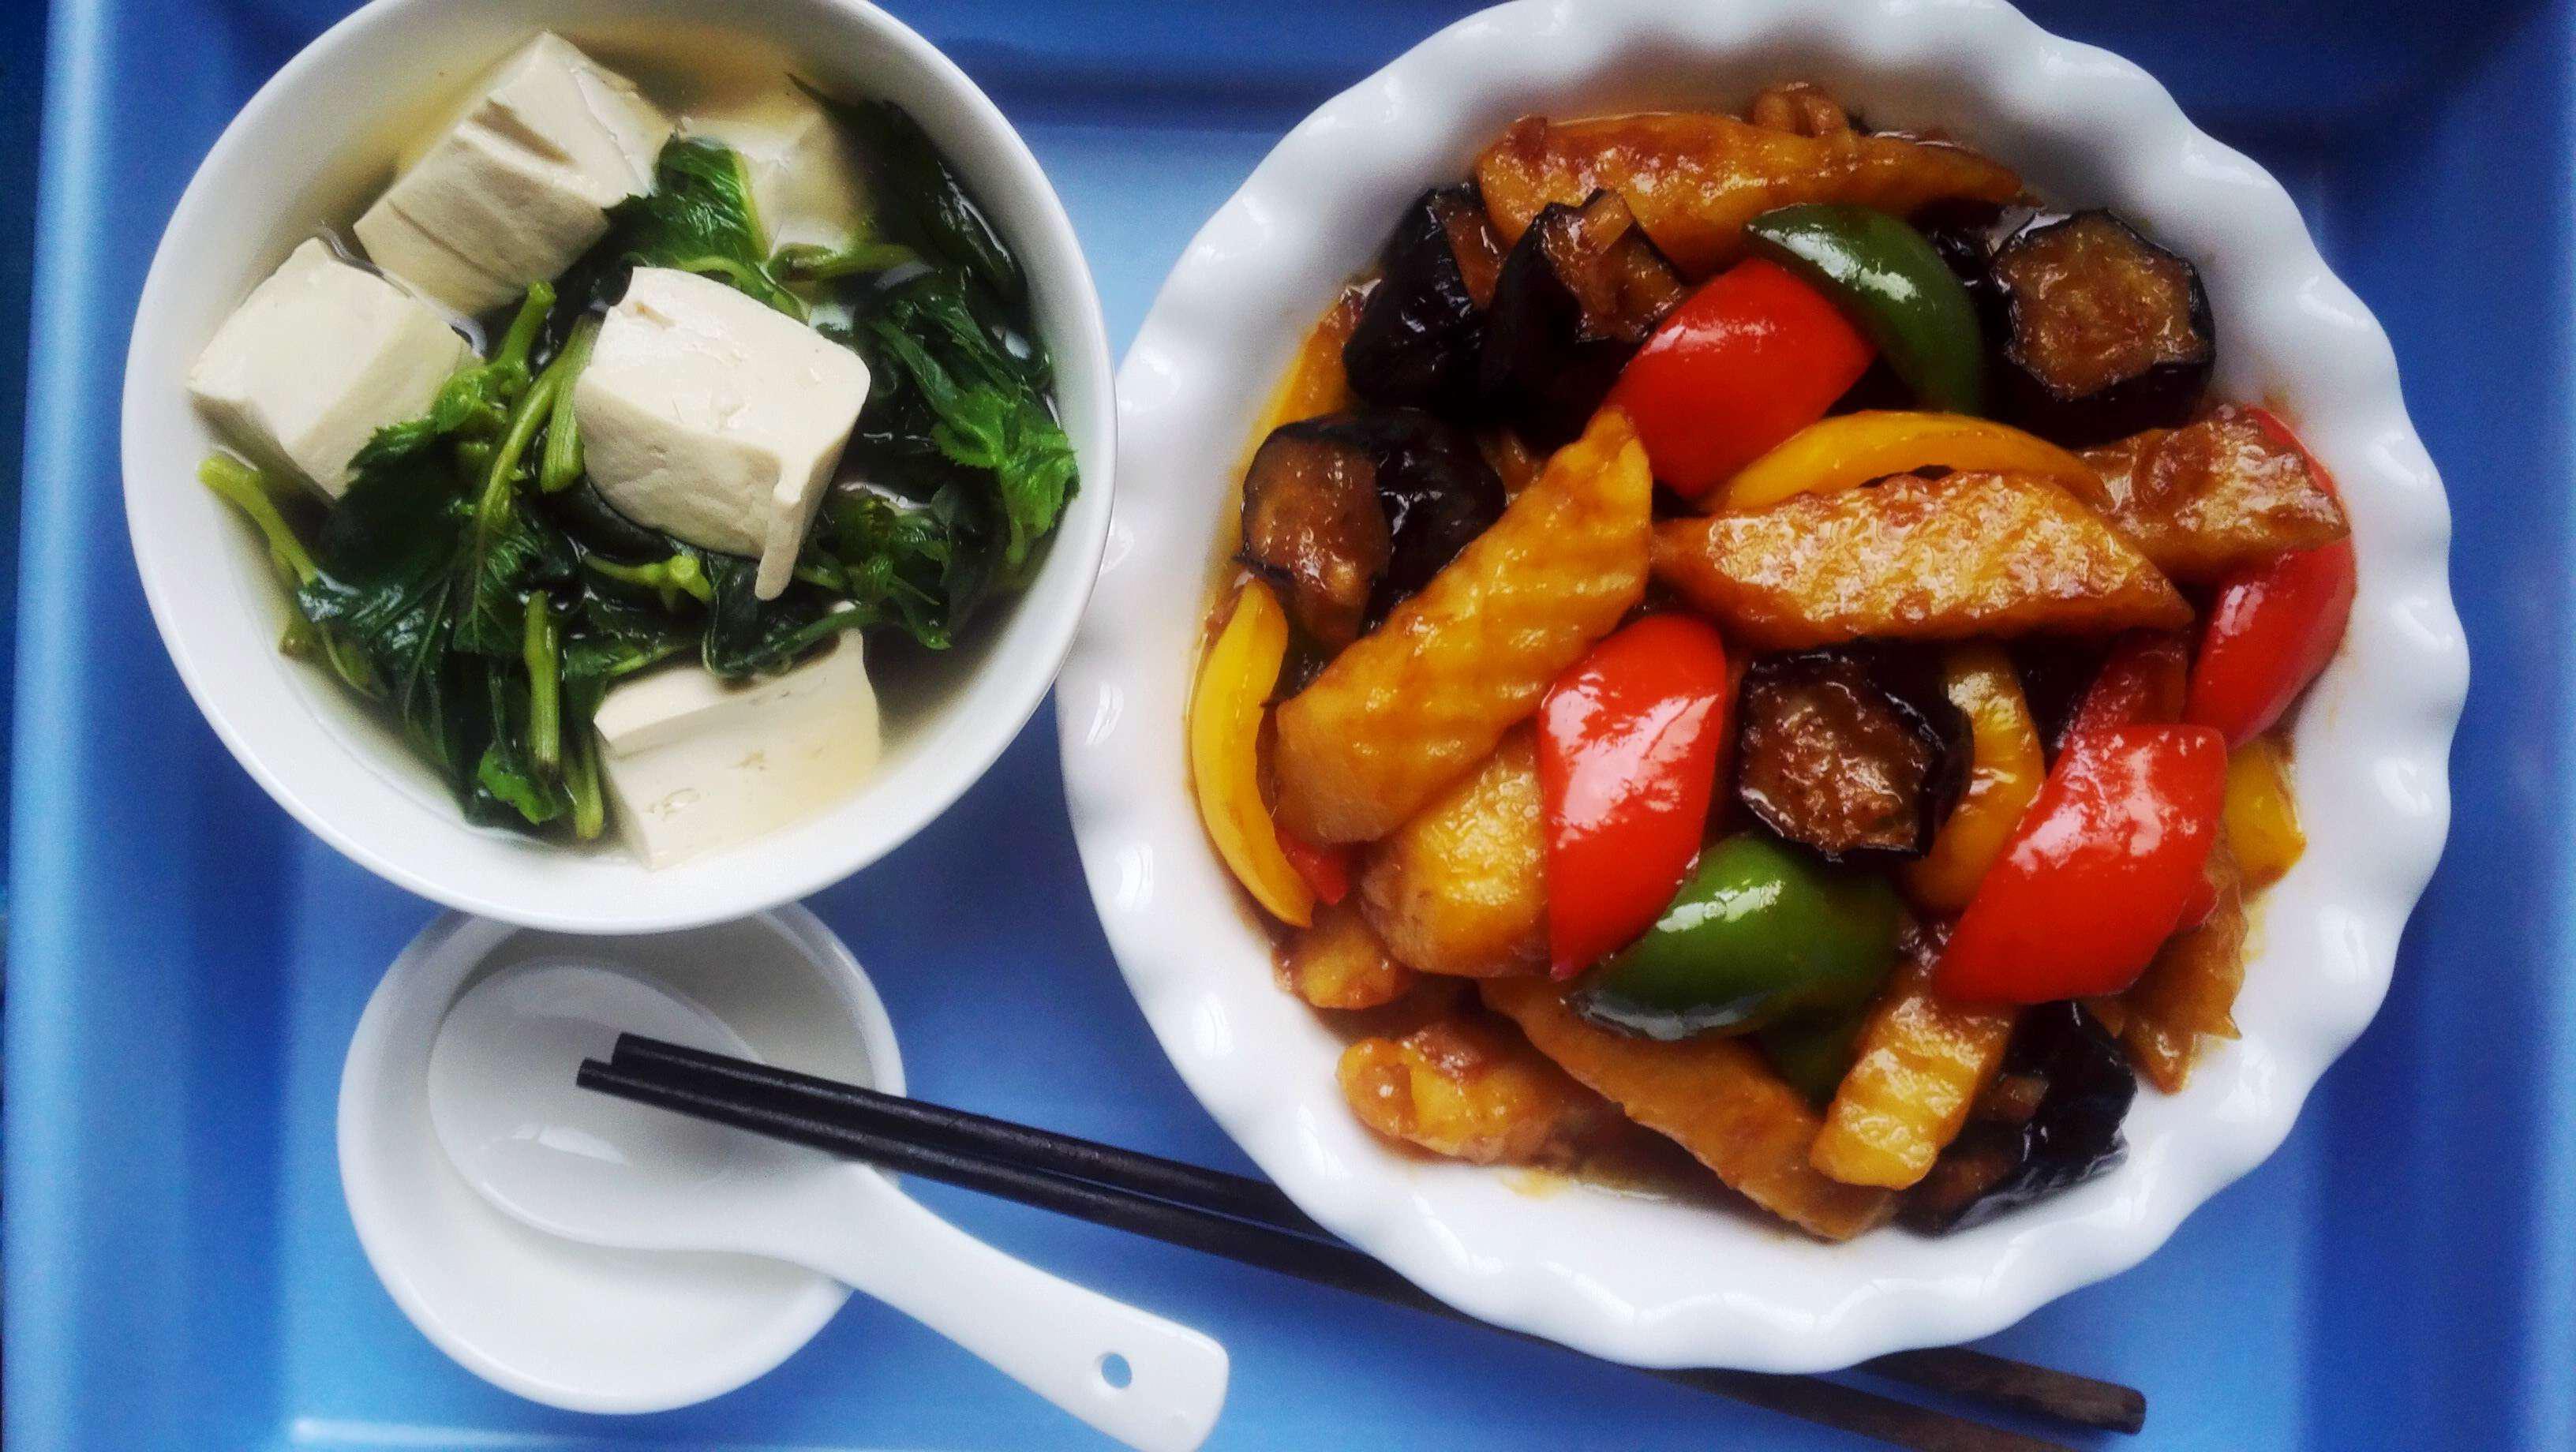 素食者不可错过的一道东北名菜丨地三鲜&野菜豆腐 · 圆满素食